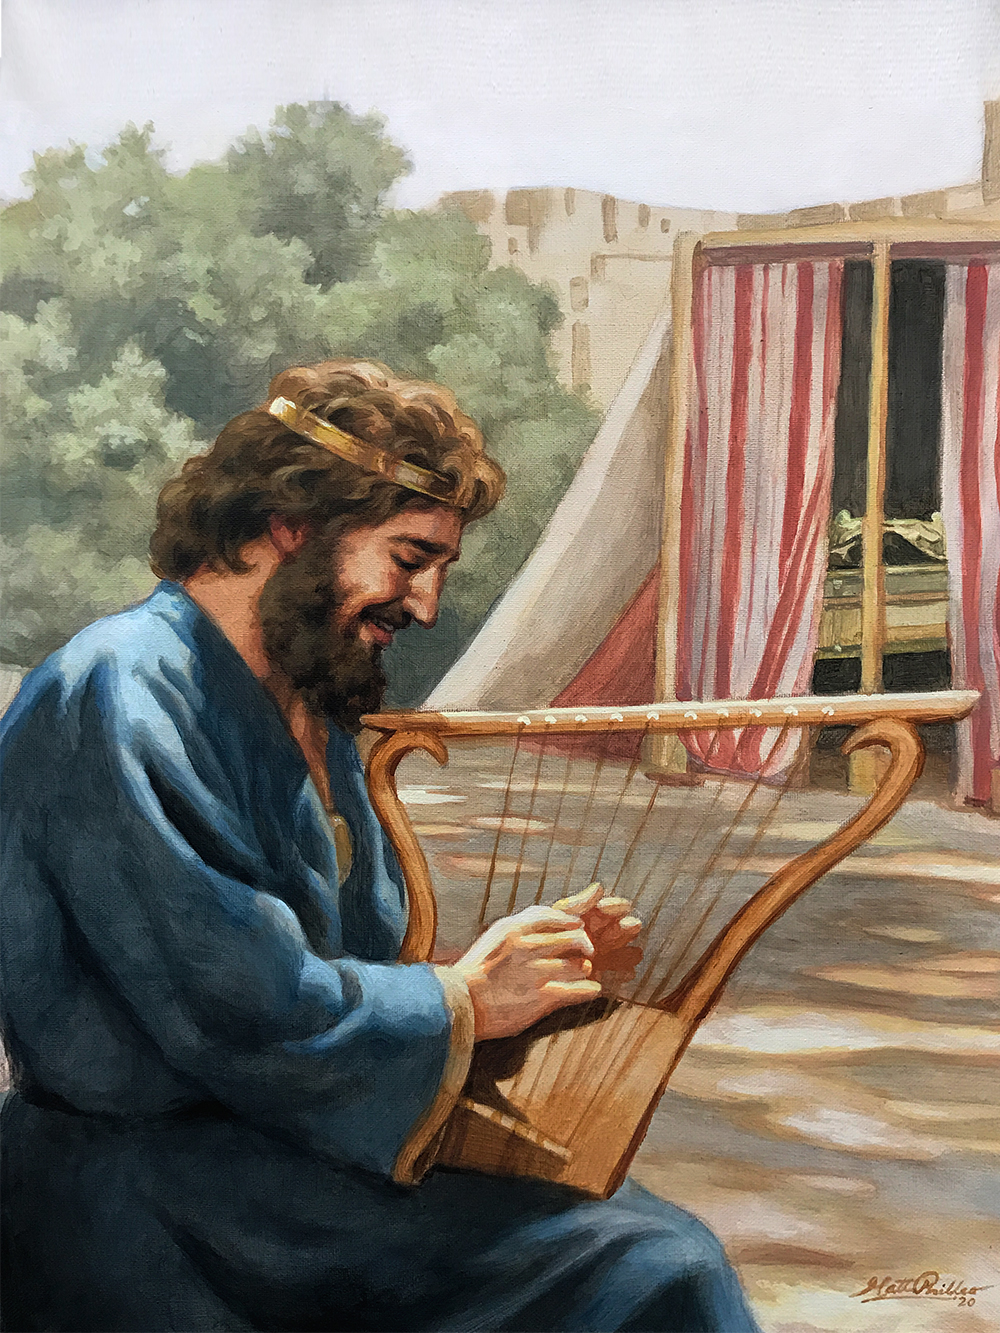 King David playing harp lyre